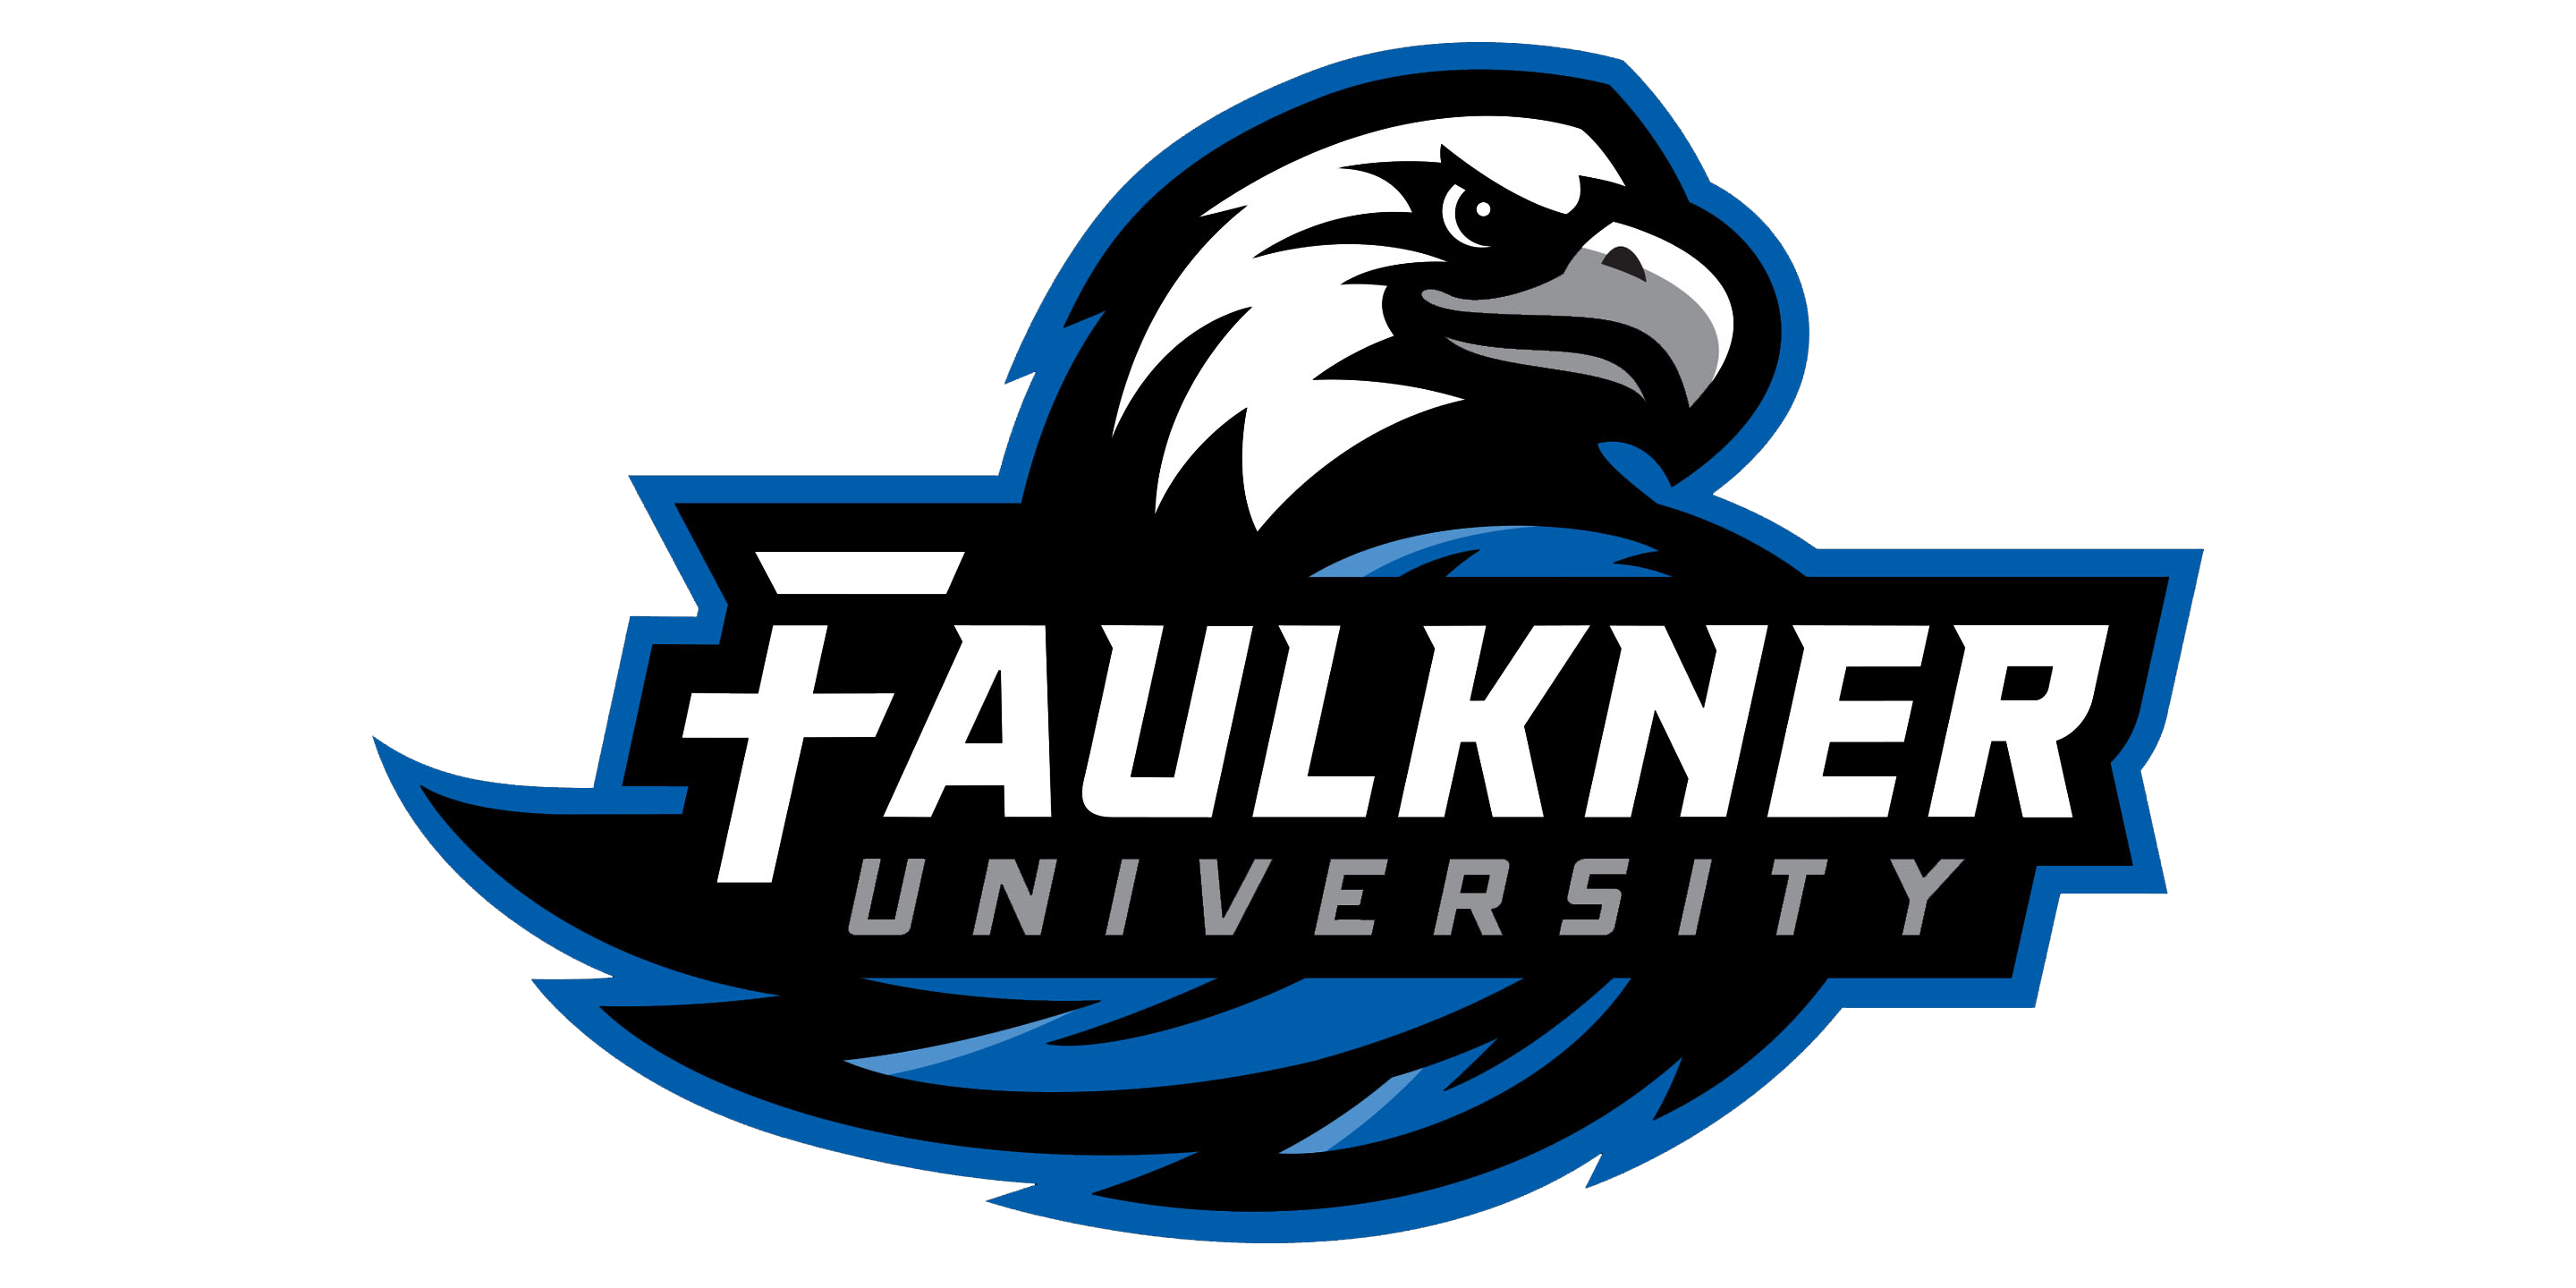 Brand Guidelines – Faulkner University